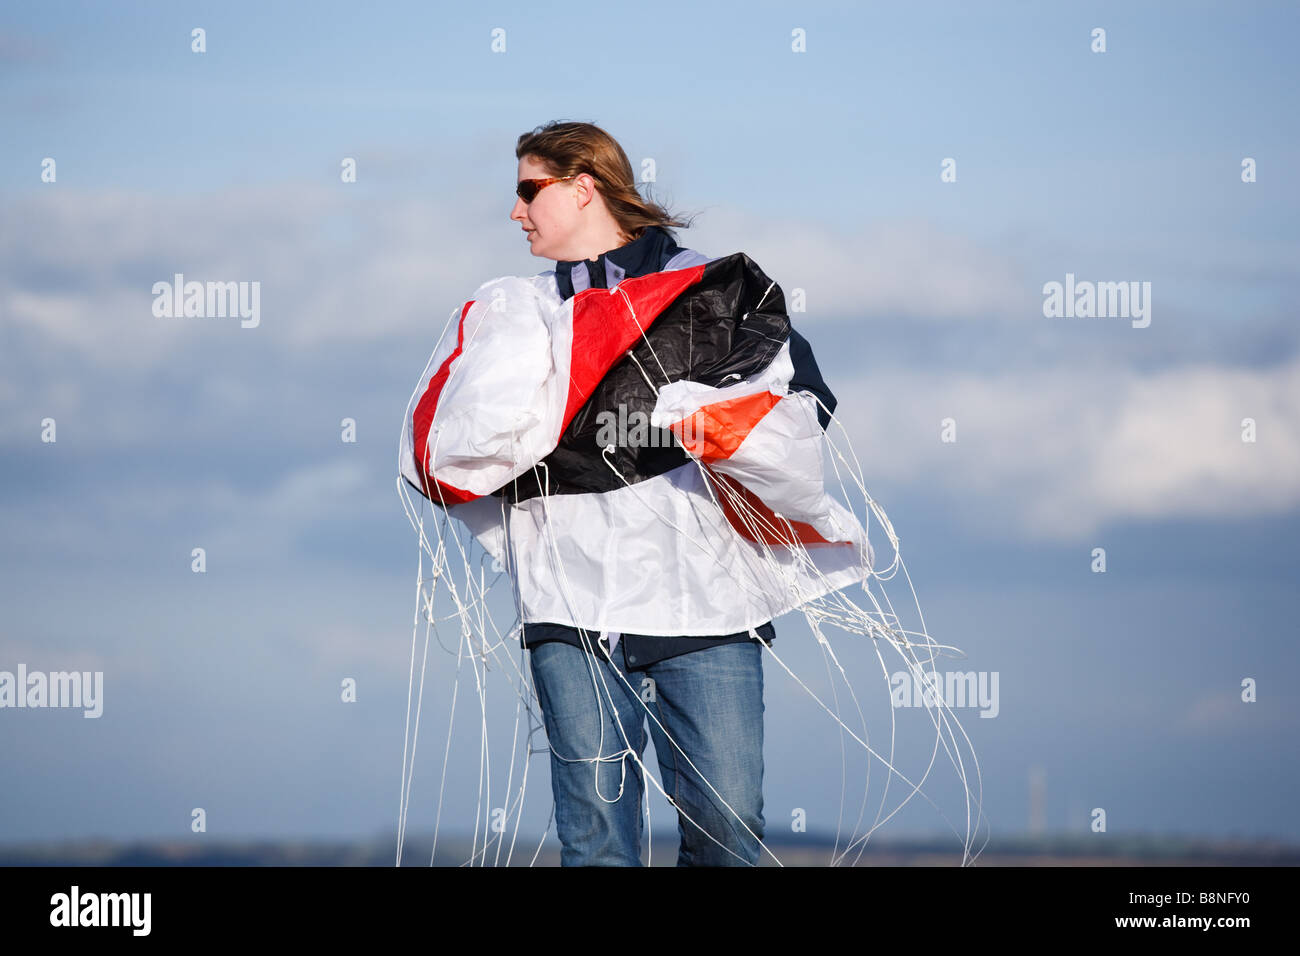 Femme en train de lancer 'cirrus' kite marque sur une colline en Angleterre Banque D'Images